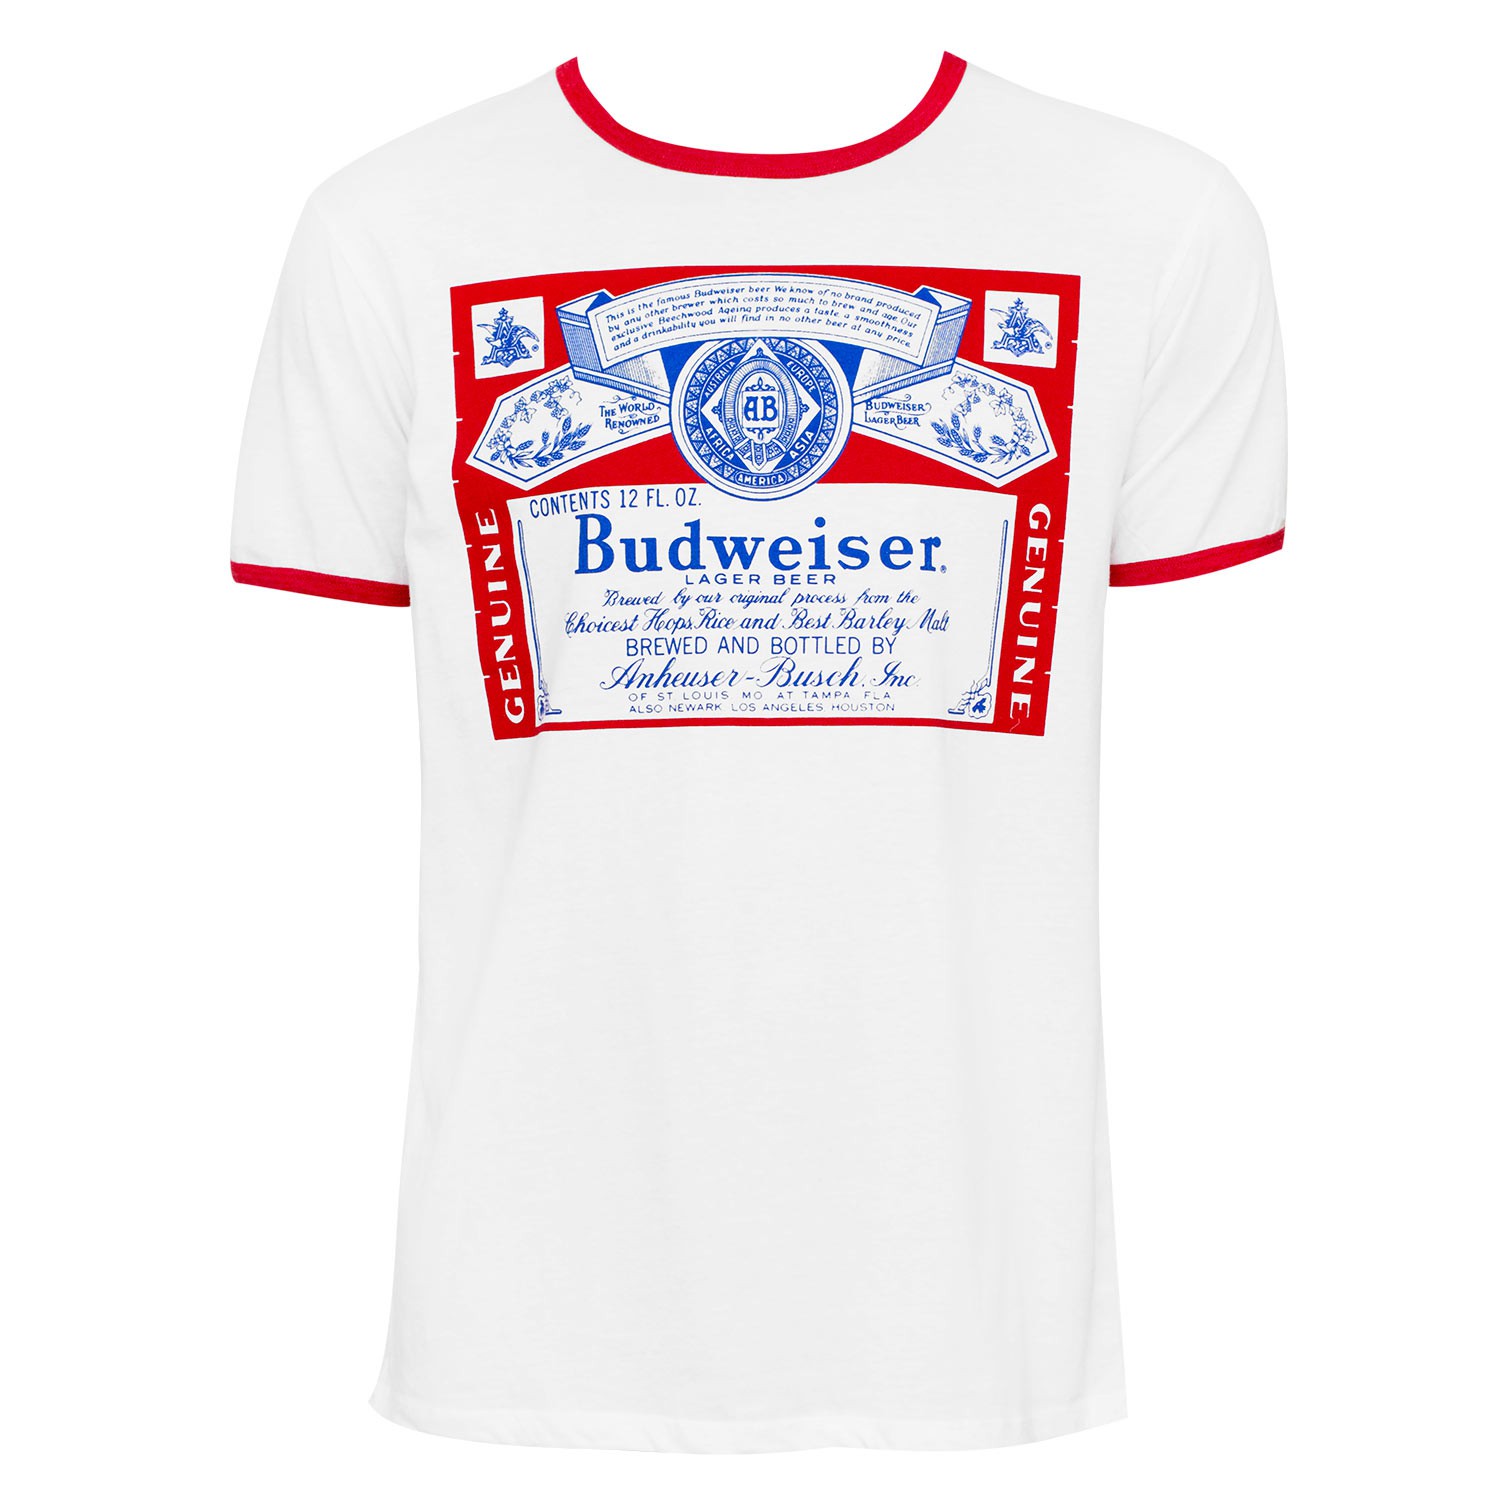 Budweiser White Ringer Tee Shirt